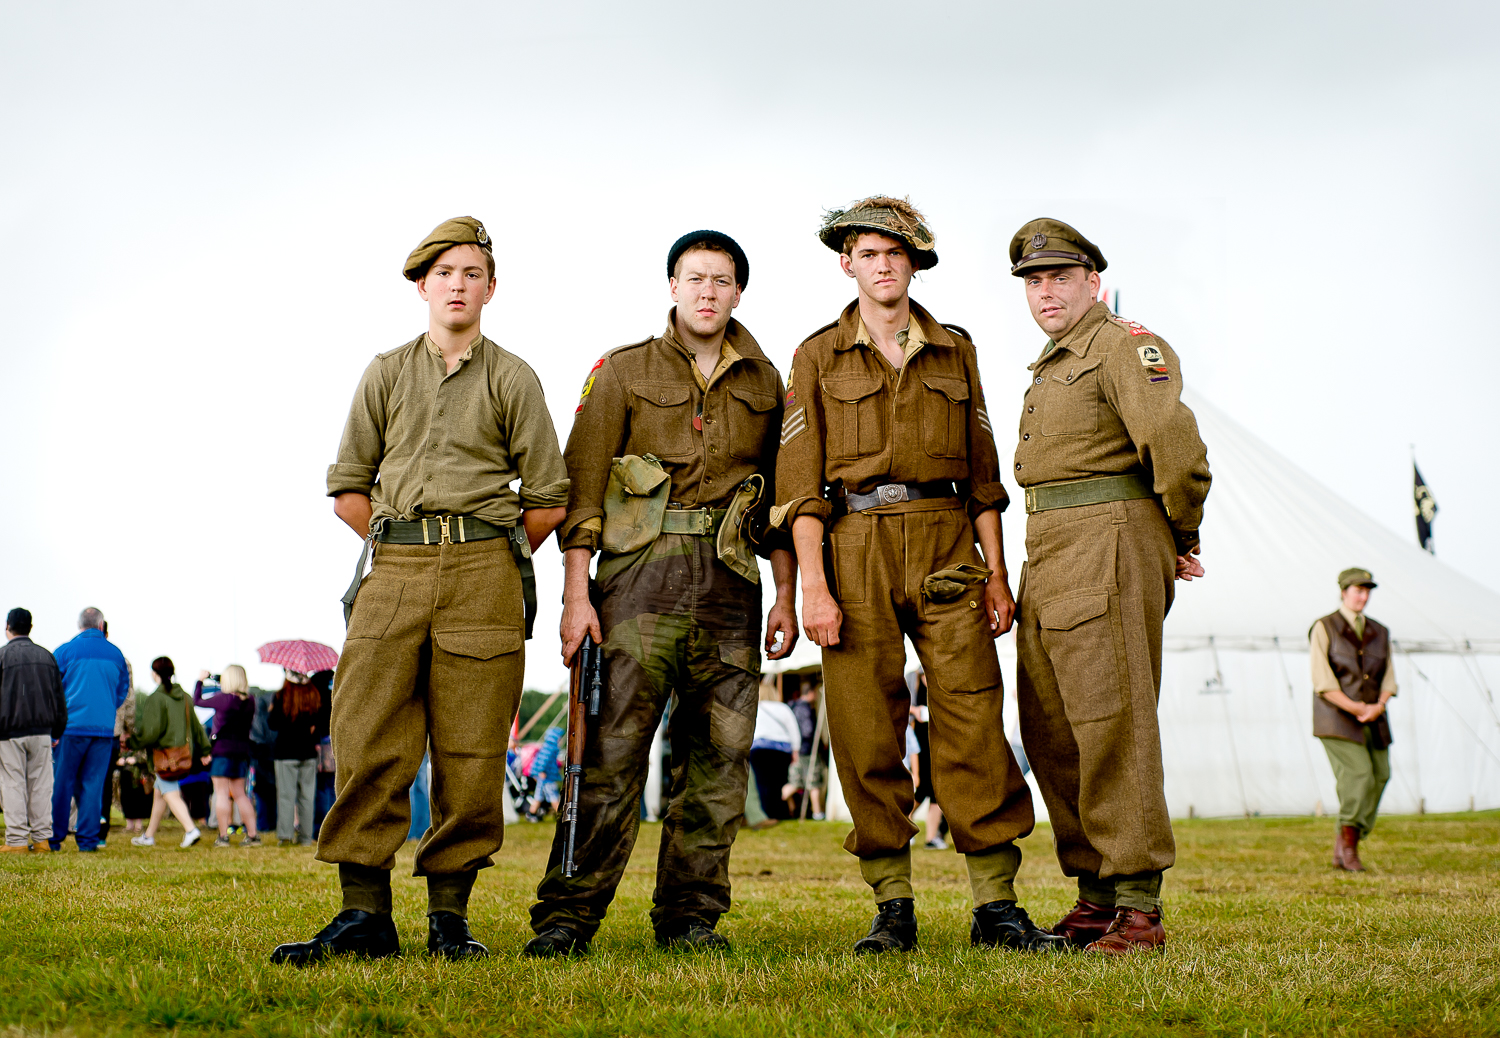  Re-enactors of British troops, event in Essex 